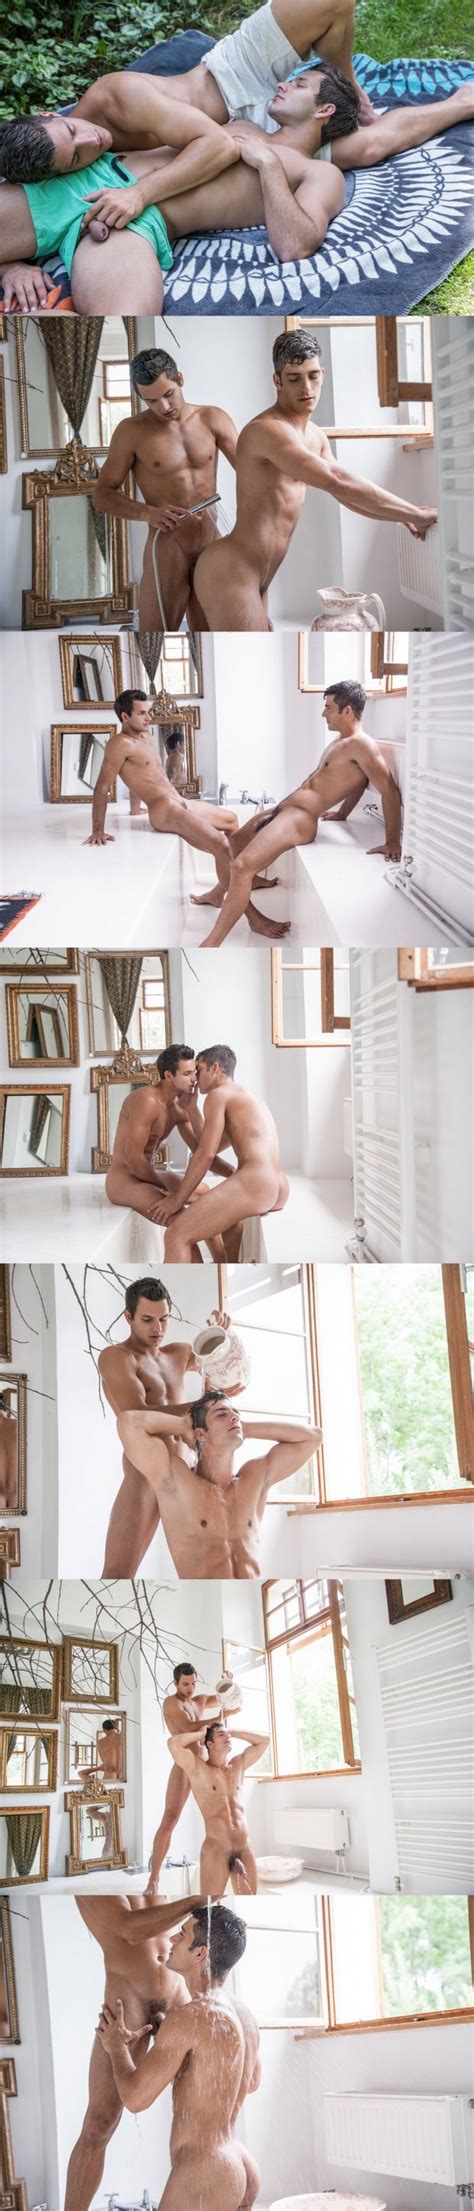 Ariel Vanean Y Marc Ruffalo Retozan Desnudos En El Cuarto De Ba O